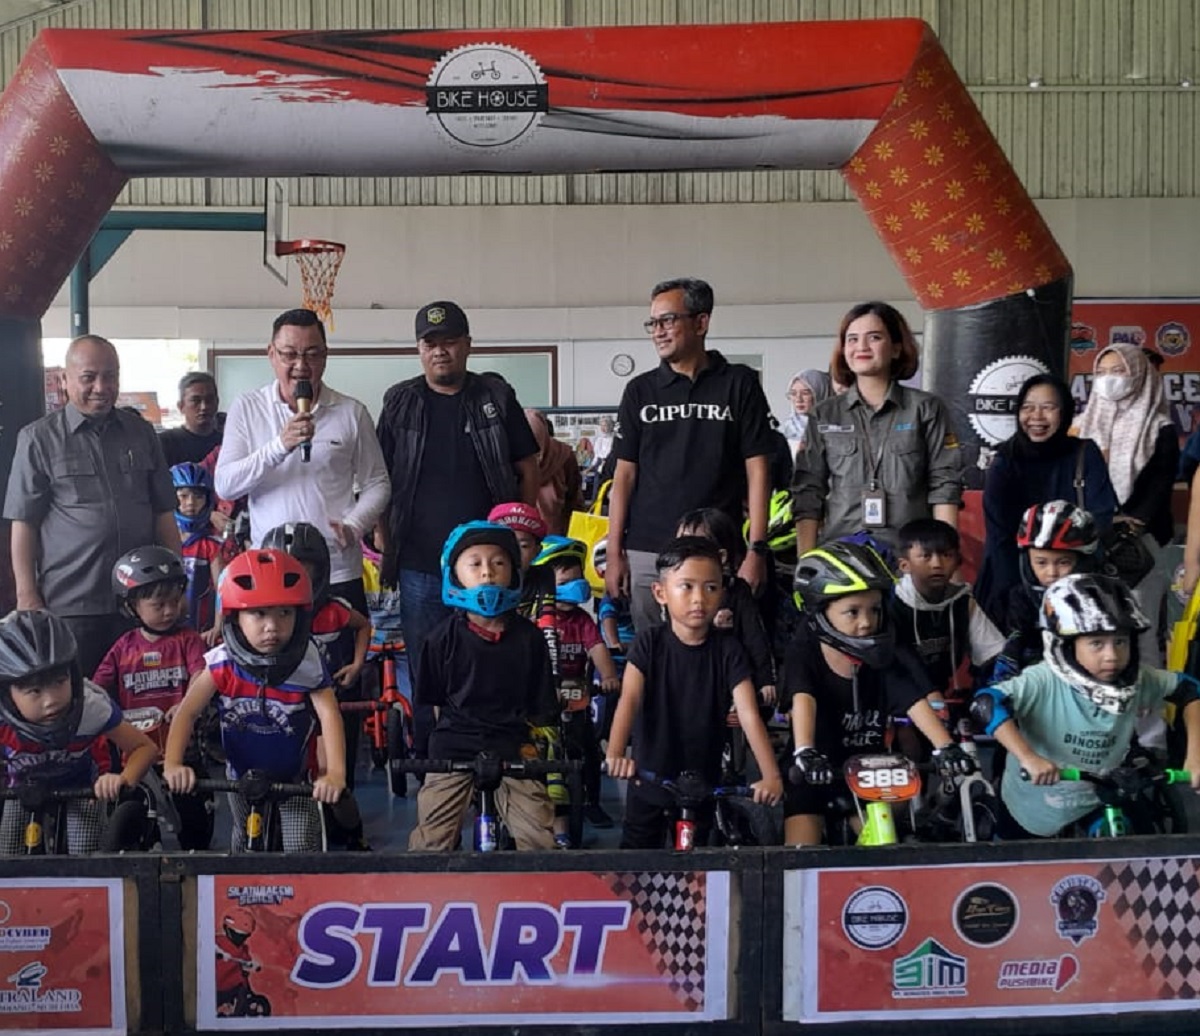 Hadirnya Event Pushbike di Sumsel, GM PALTV Berharap Pushbike Lebih Dikenal Oleh Masyarakat